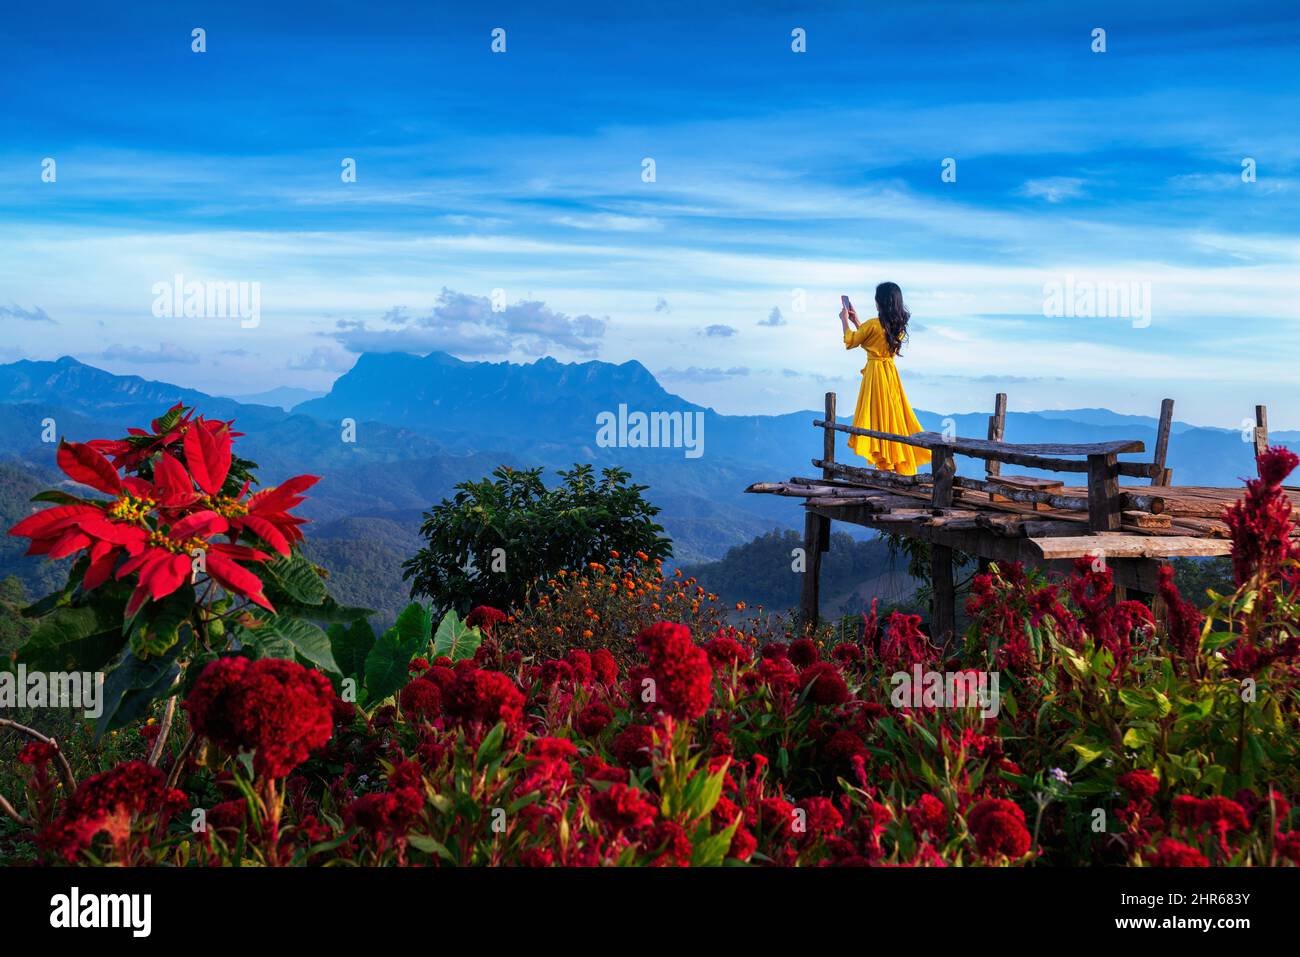 Femme touriste prenant une photo des montagnes Doi Luang Chiang Dao, Chiang mai, Thaïlande. Banque D'Images